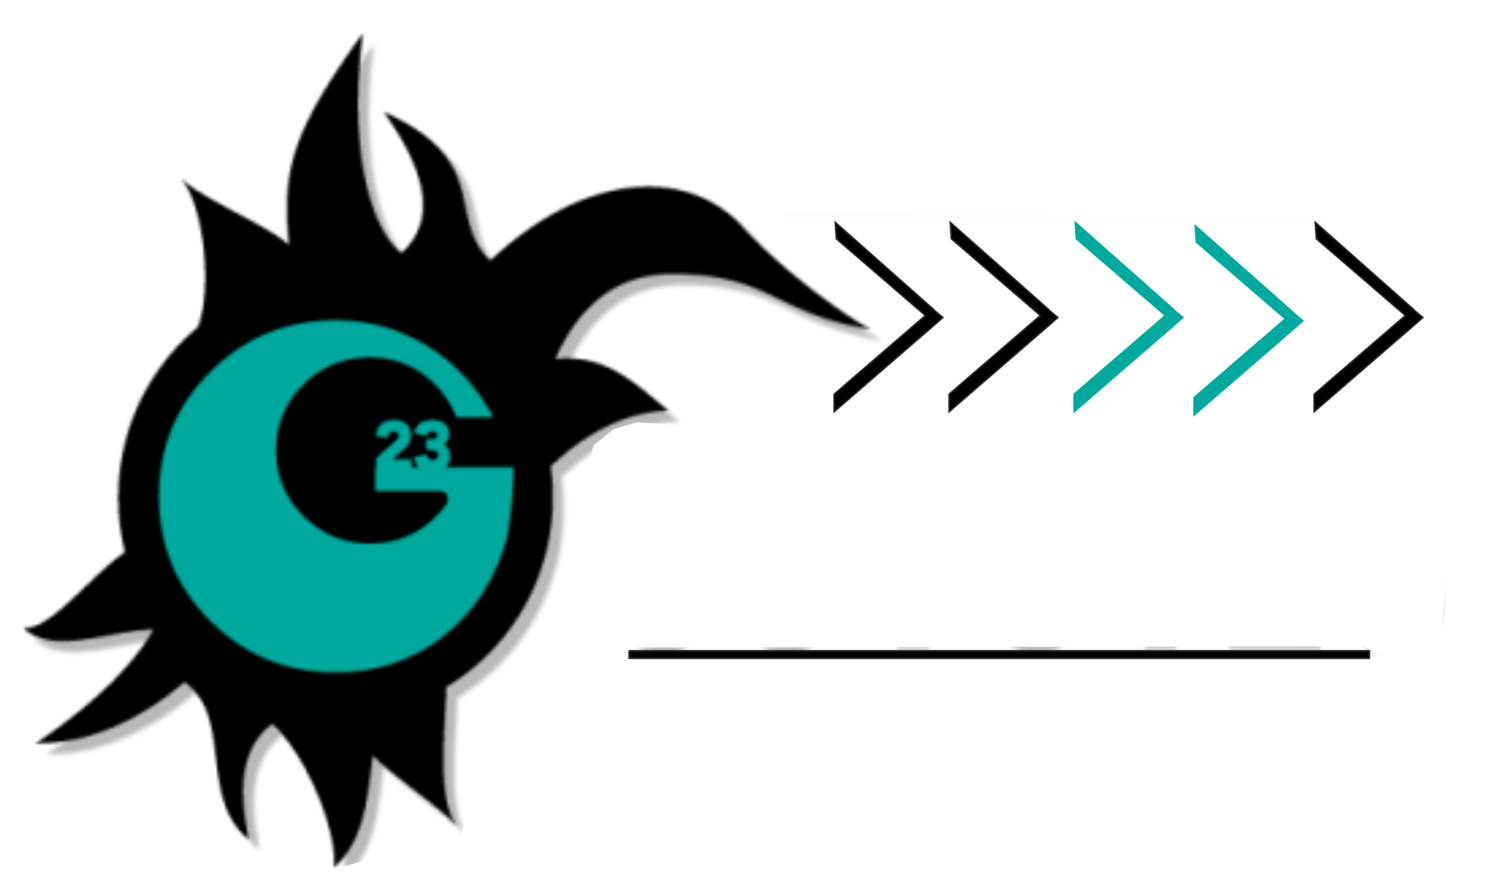 Guyutes